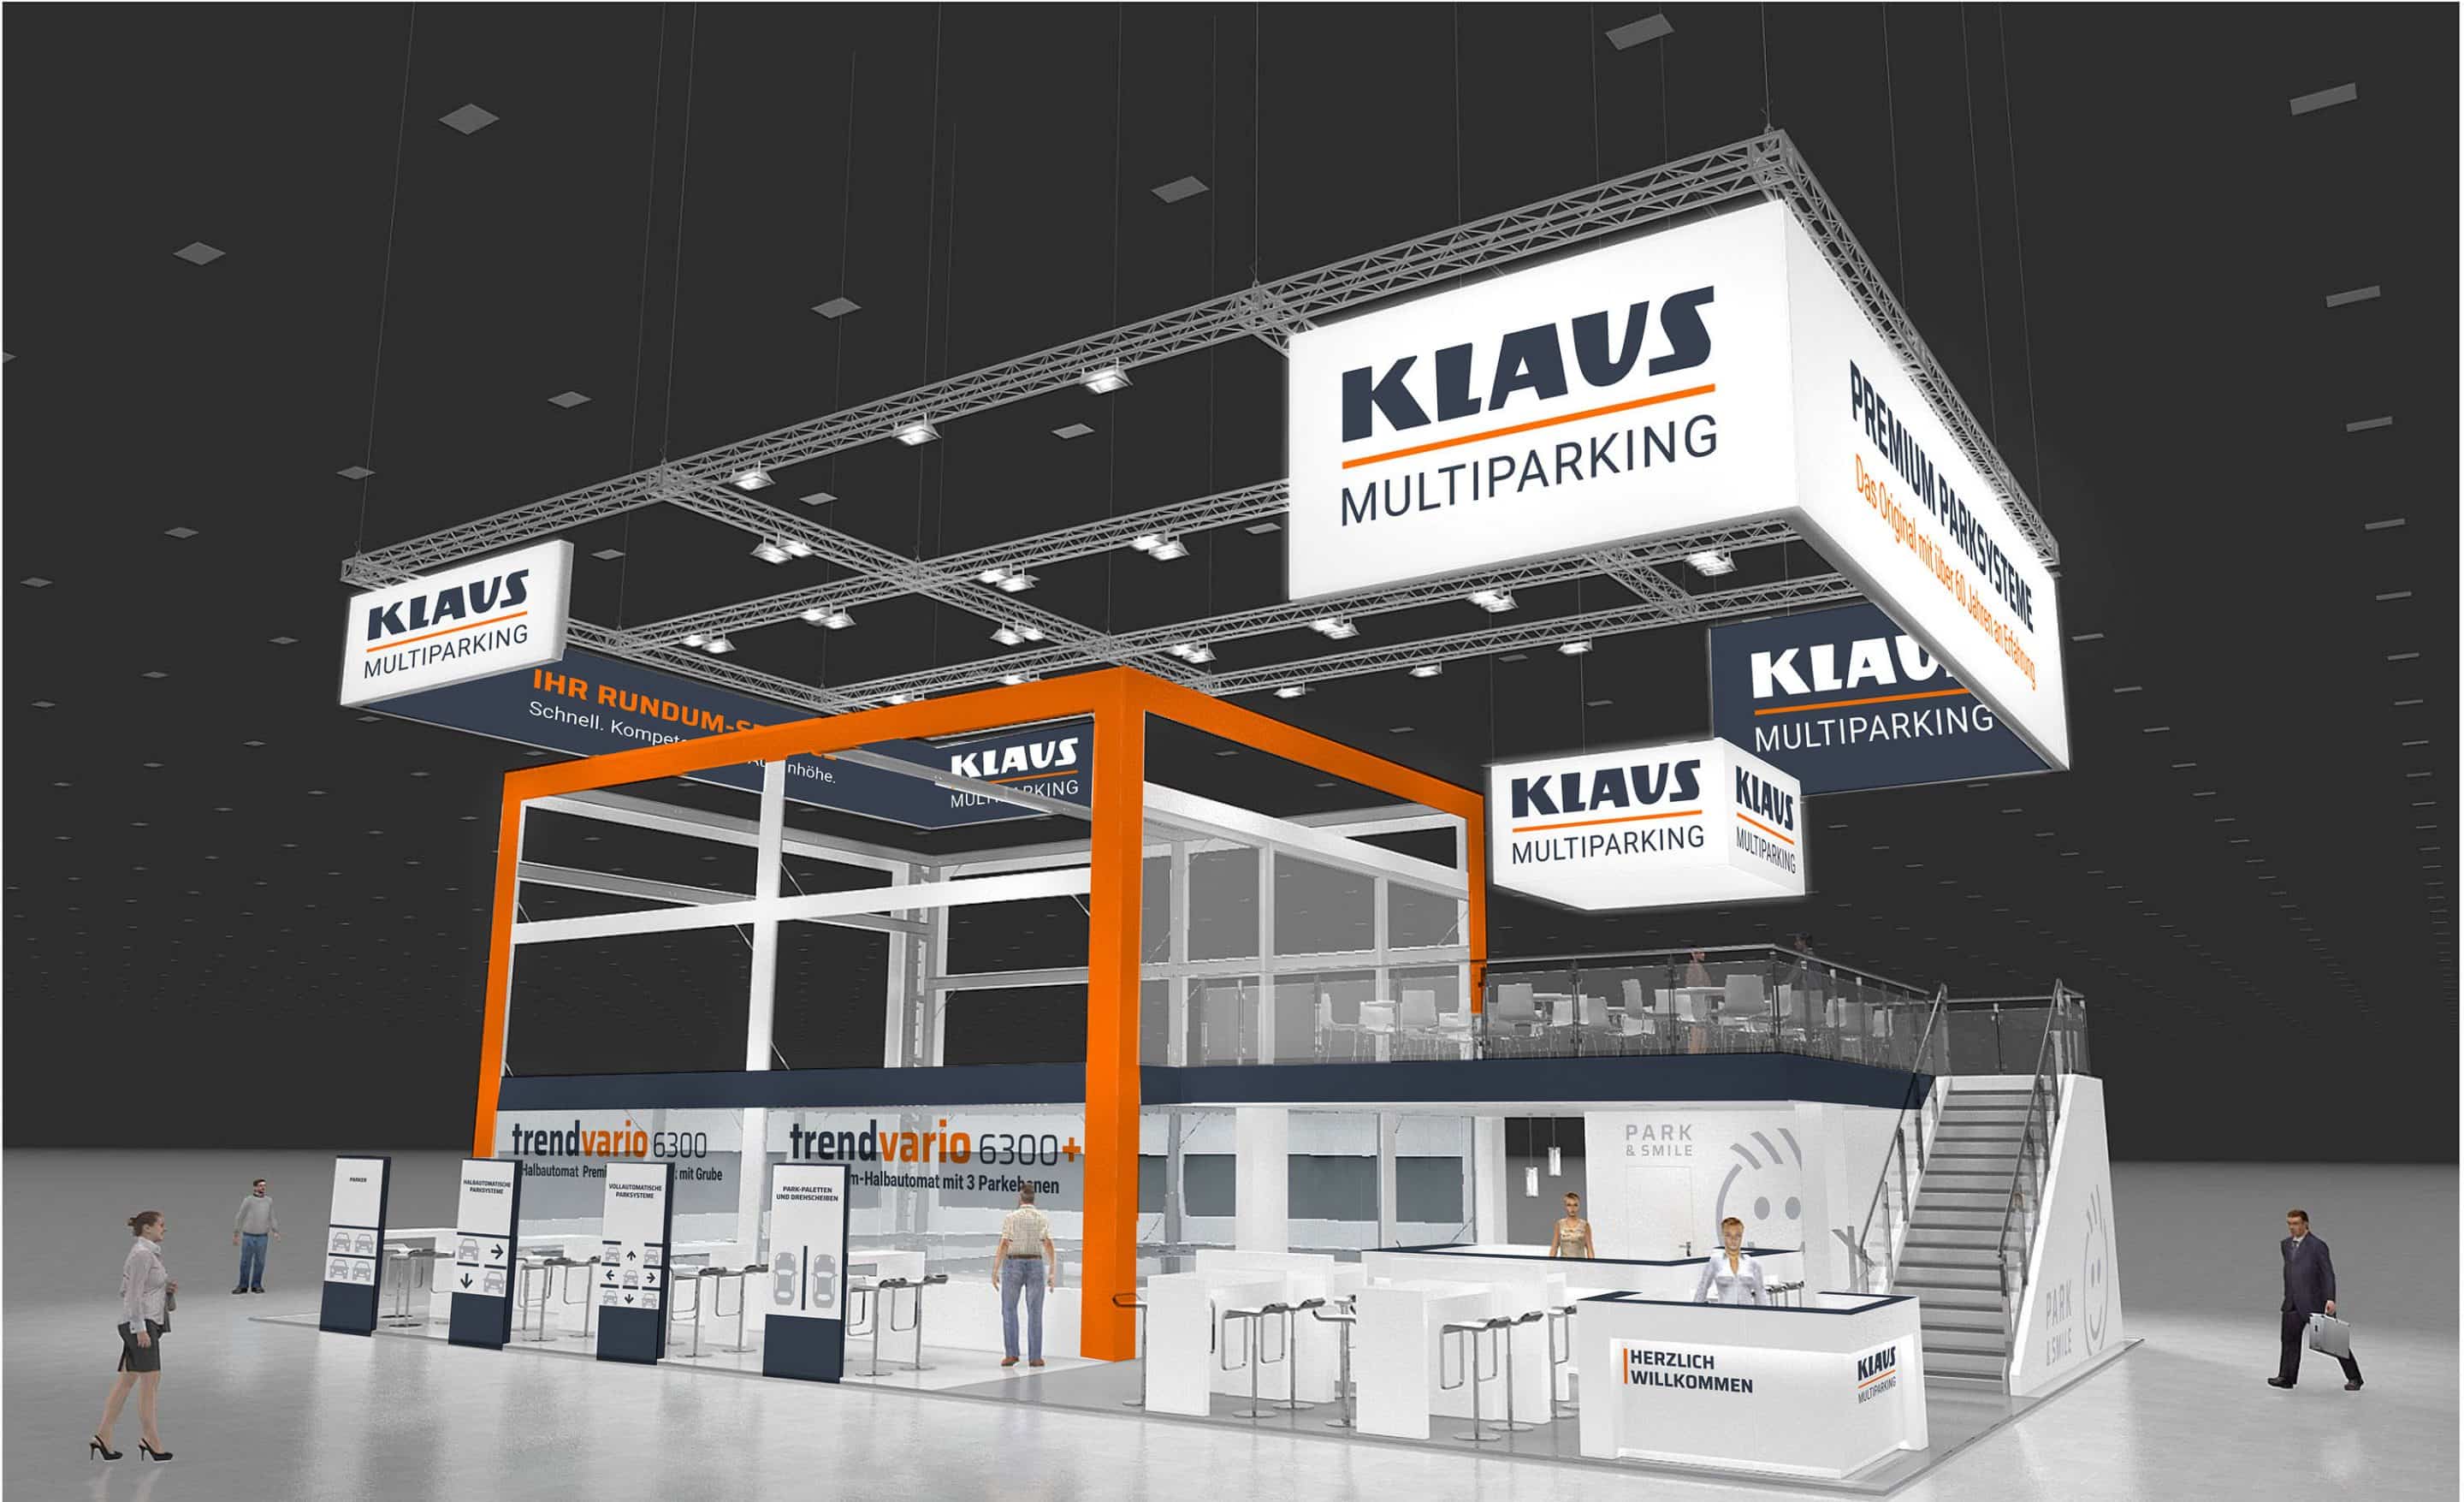 KLAUS Multiparking präsentiert mit der neuen Baureihe TrendVario 6000 auf der BAU23 in München das Parken der Zukunft. Bild: KLAUS Multiparking